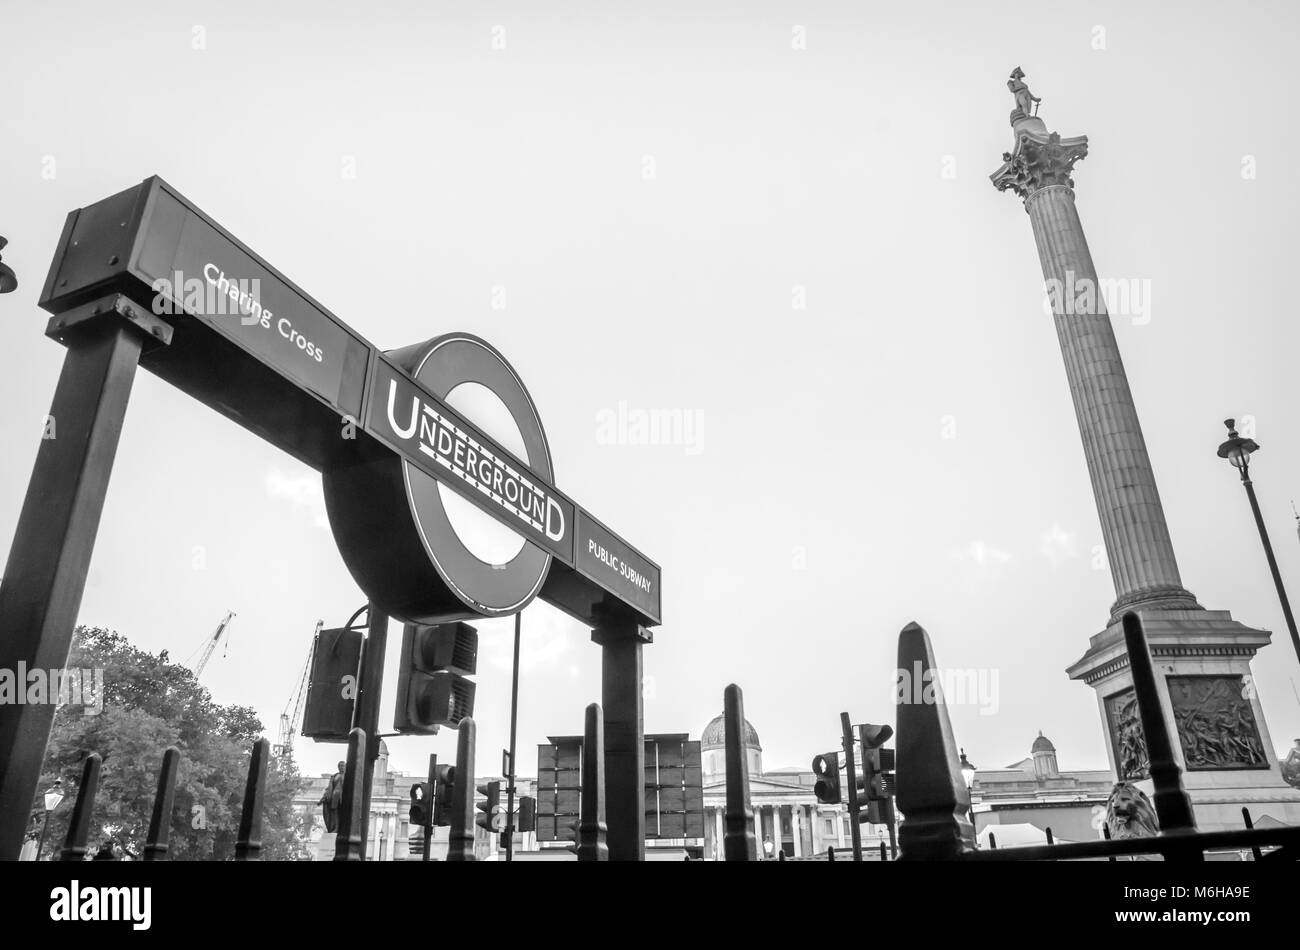 Londres, UK - OCT. 15, 2017 : signe d'entrée de la station de métro Charing Cross et colonne de l'amiral Nelson près de Trafalgar Square à Londres en Angleterre. Banque D'Images